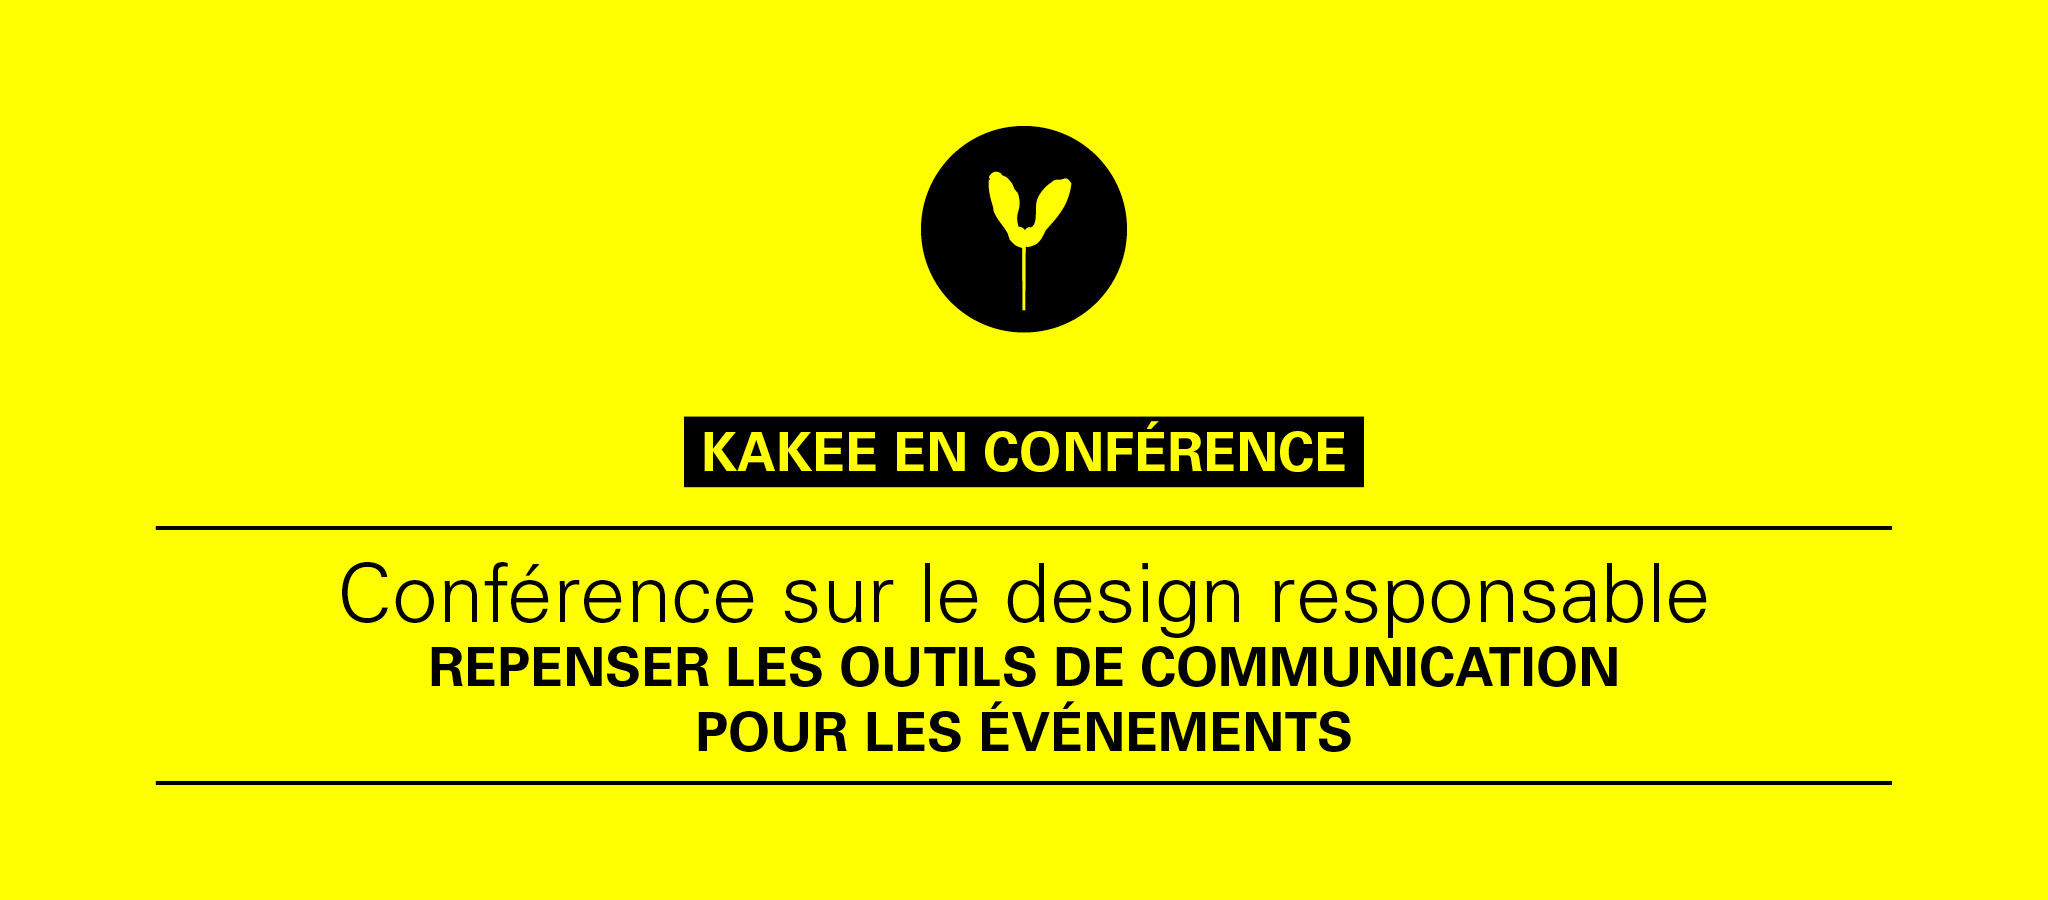 KAKEE donne une conférence à Tourisme Montréal sur le design responsable pour les événements.